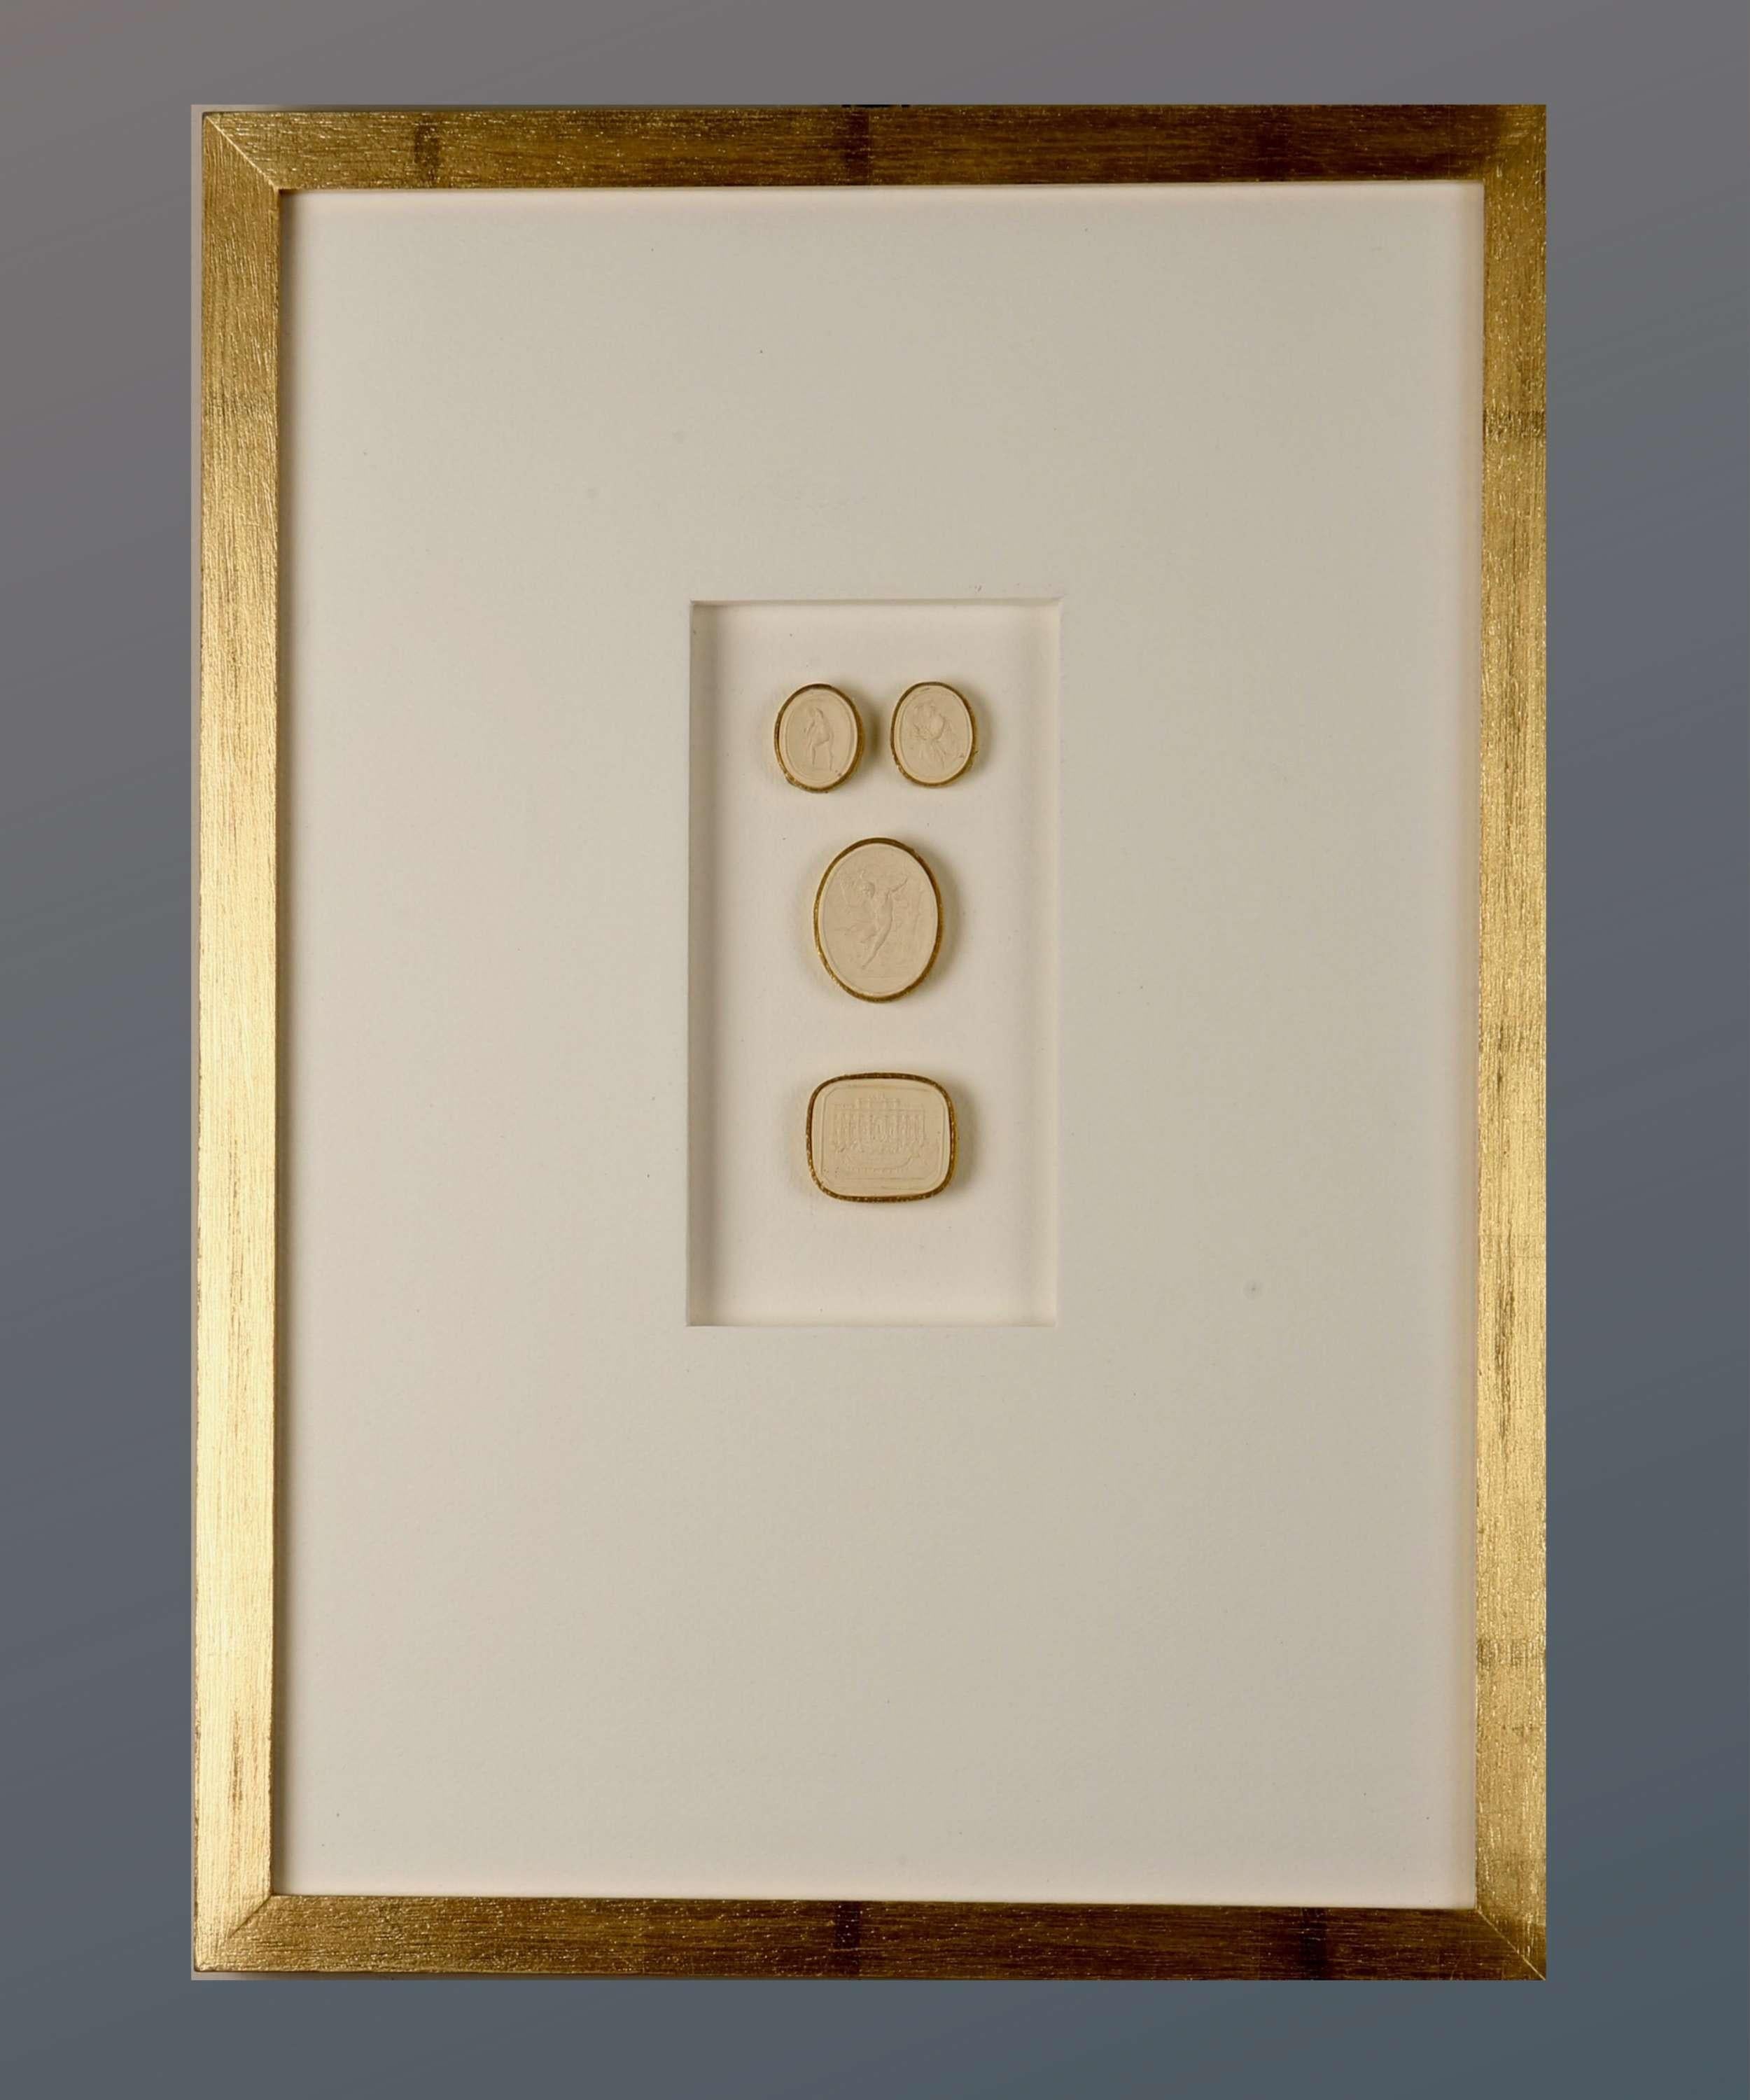 Paoletti Impronte, ‘Mussei Diversi’ Framed Plaster Cameo Seals, Rome c1800 - Art by Bartolomeo Paoletti and Pietro Paoletti